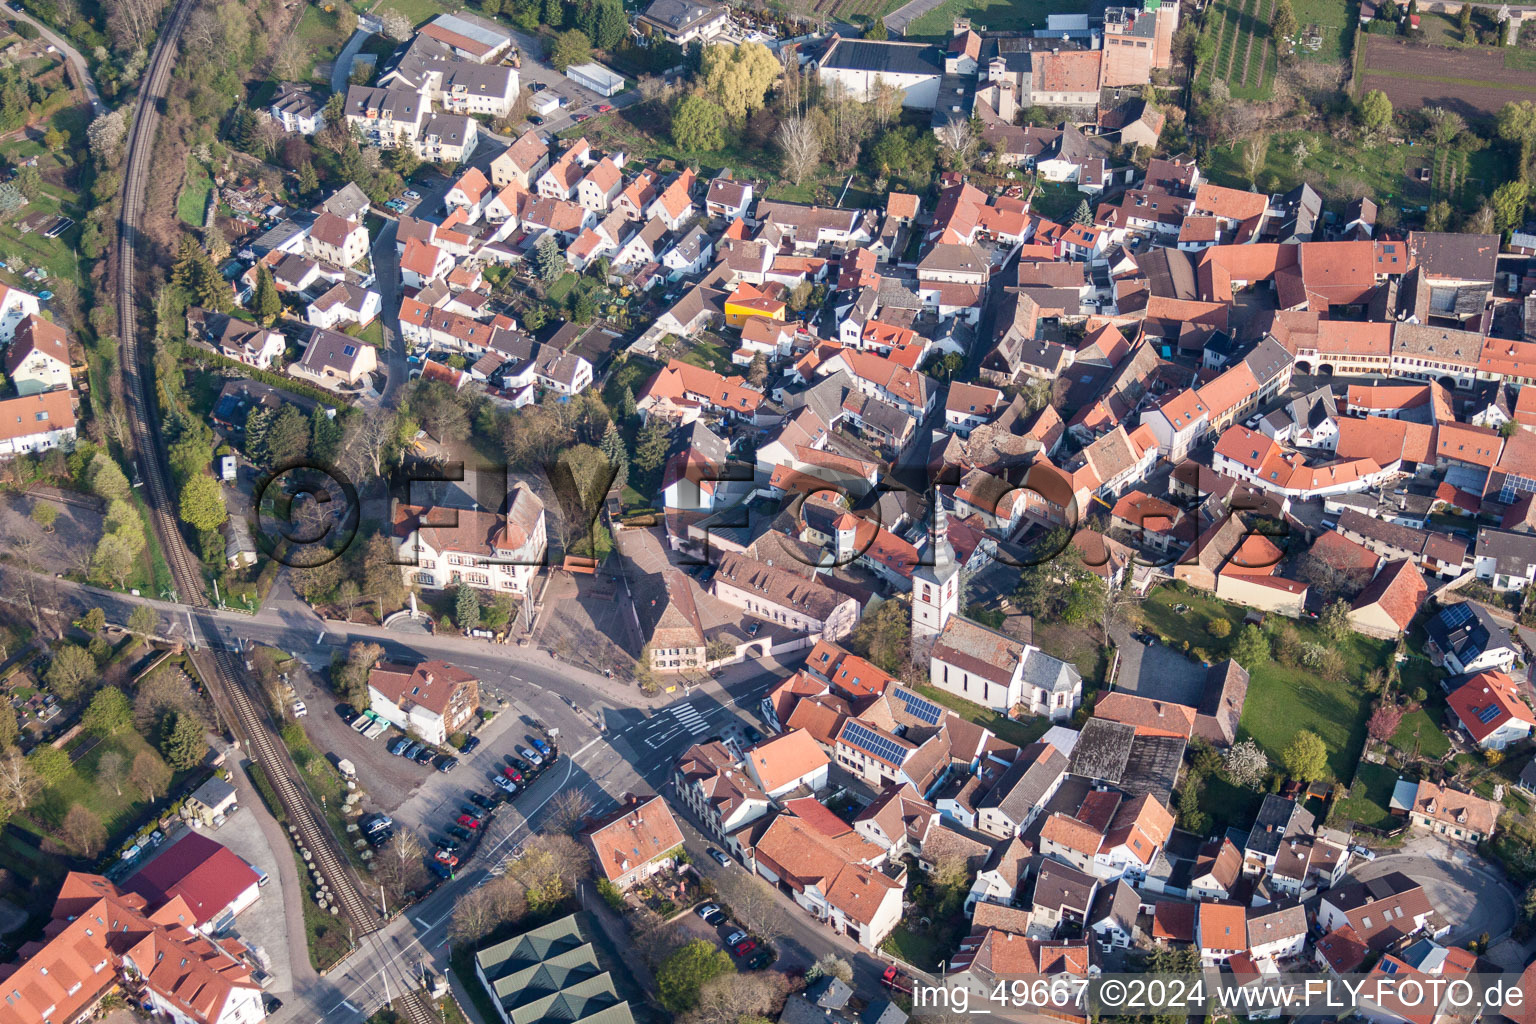 Vue aérienne de Bâtiment d'église au centre du village à Kirchheim an der Weinstraße dans le département Rhénanie-Palatinat, Allemagne